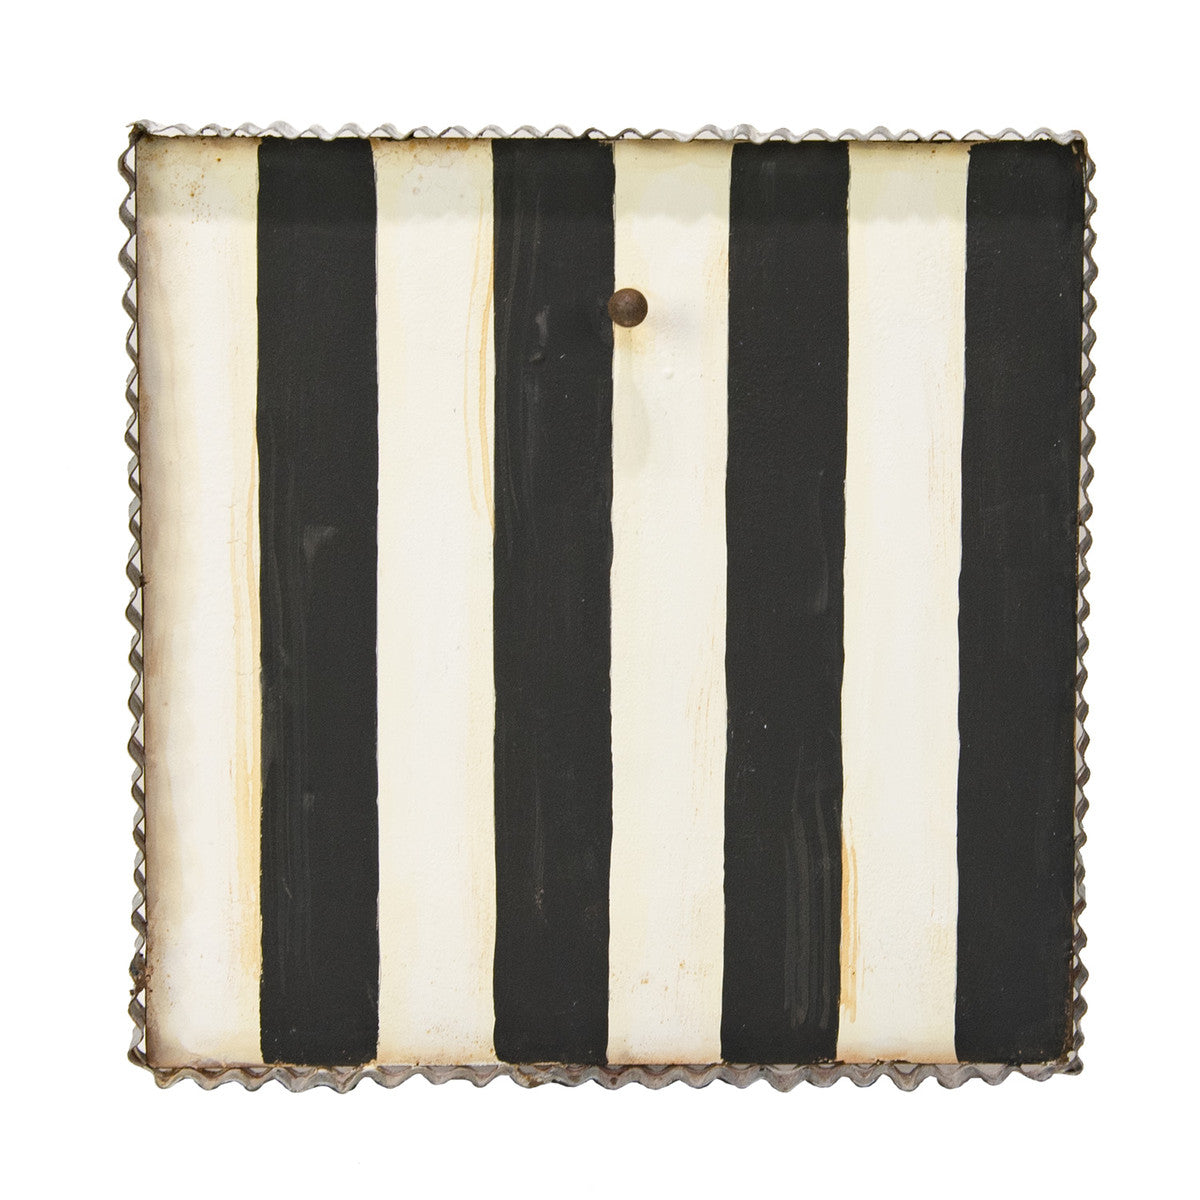 Black & White Striped Mini Gallery Display Board